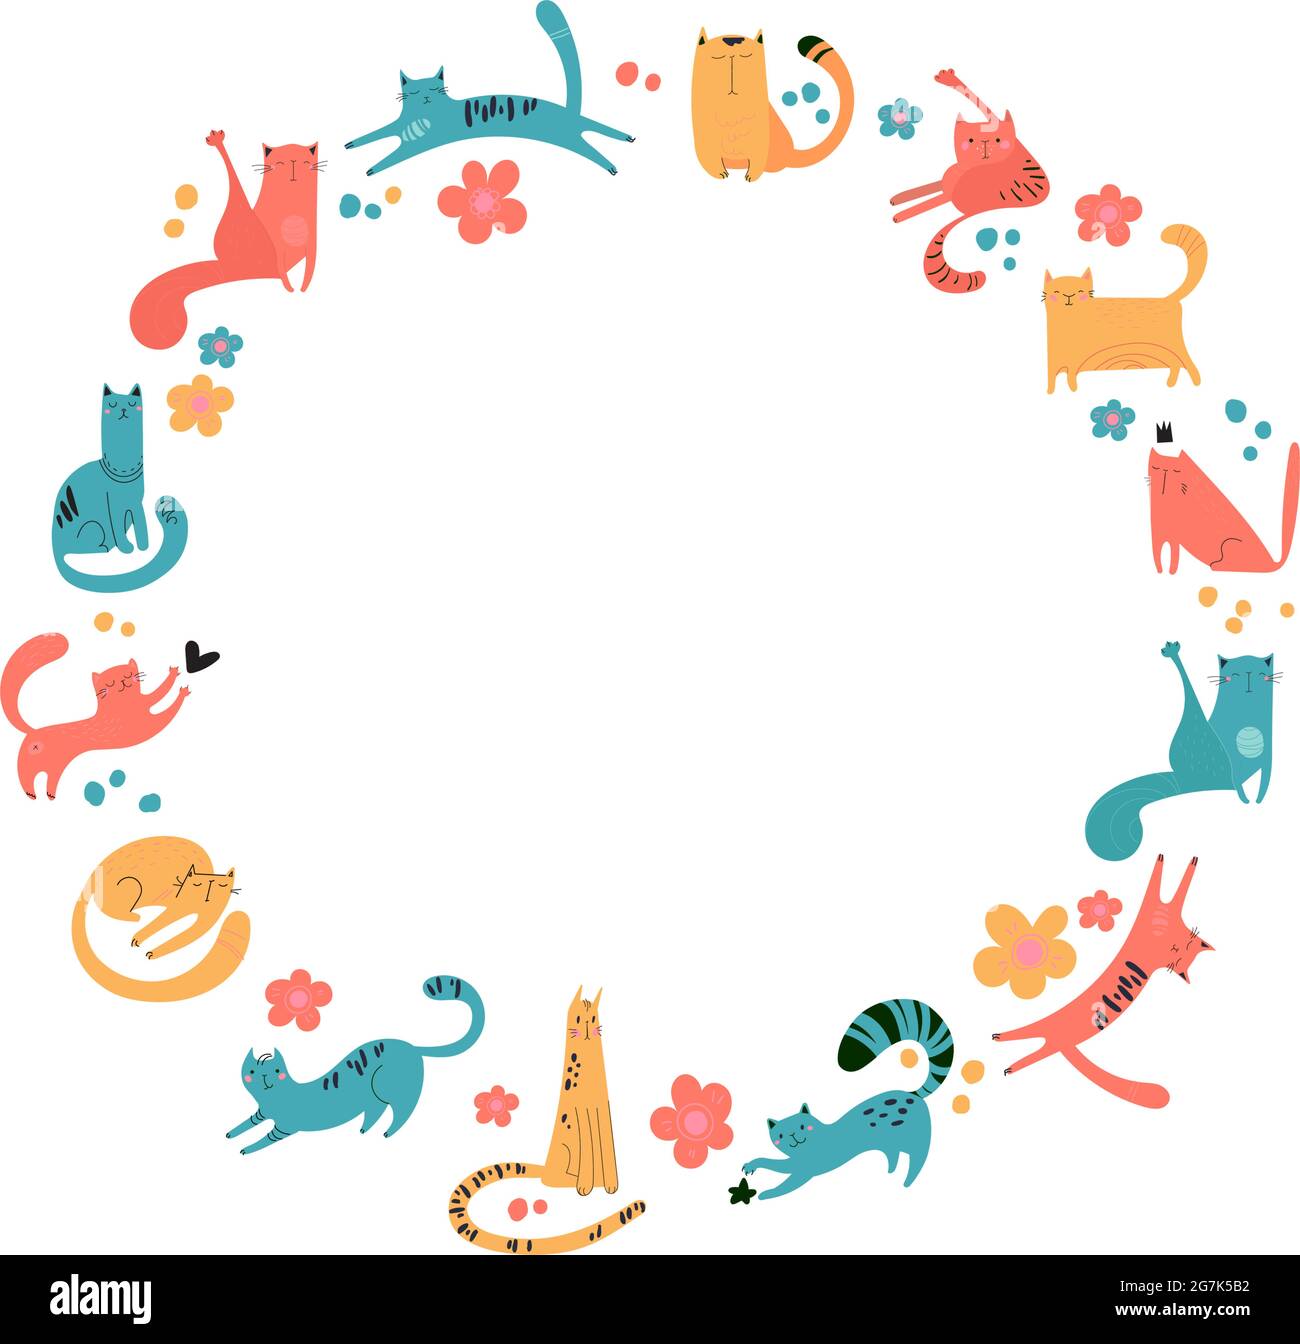 Cadre rond de chats dessinés pour l'impression, les textiles, les t-shirts, les affiches. Animaux moelleux et mignons. Cadre sur fond blanc. Les animaux de compagnie vectoriels de différentes couleurs jouent, s'assoient, marchent, dorment Illustration de Vecteur